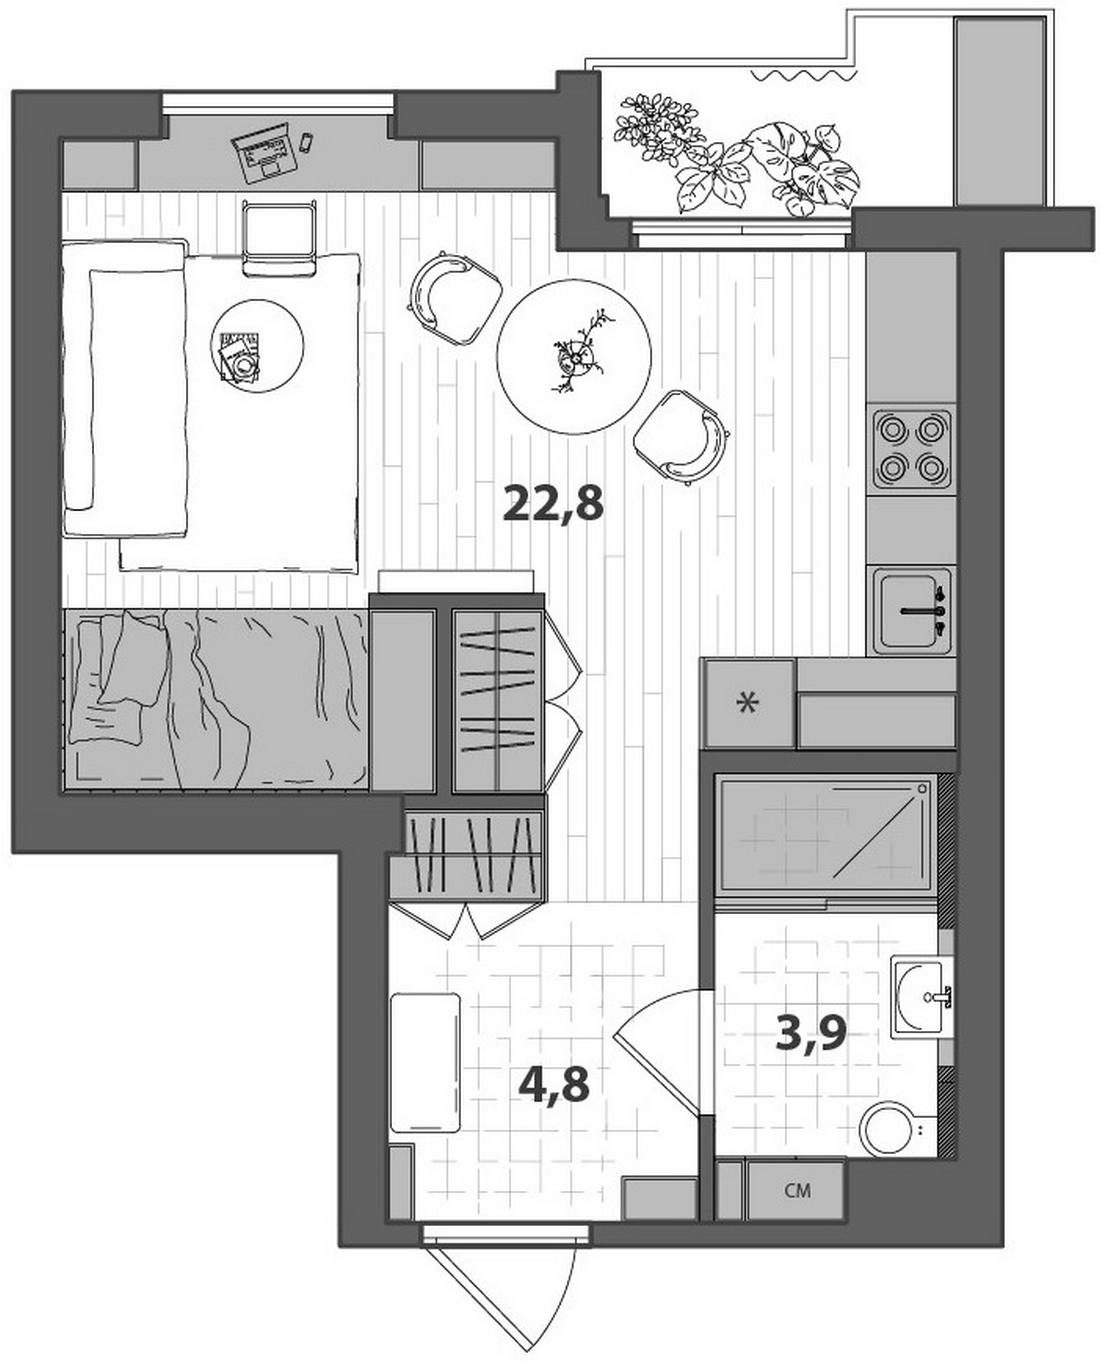 A lakberendező saját édesanyjának alakította ki a 34m2-es lakást, funkcionális, dekoratív enteriőrt tervezve